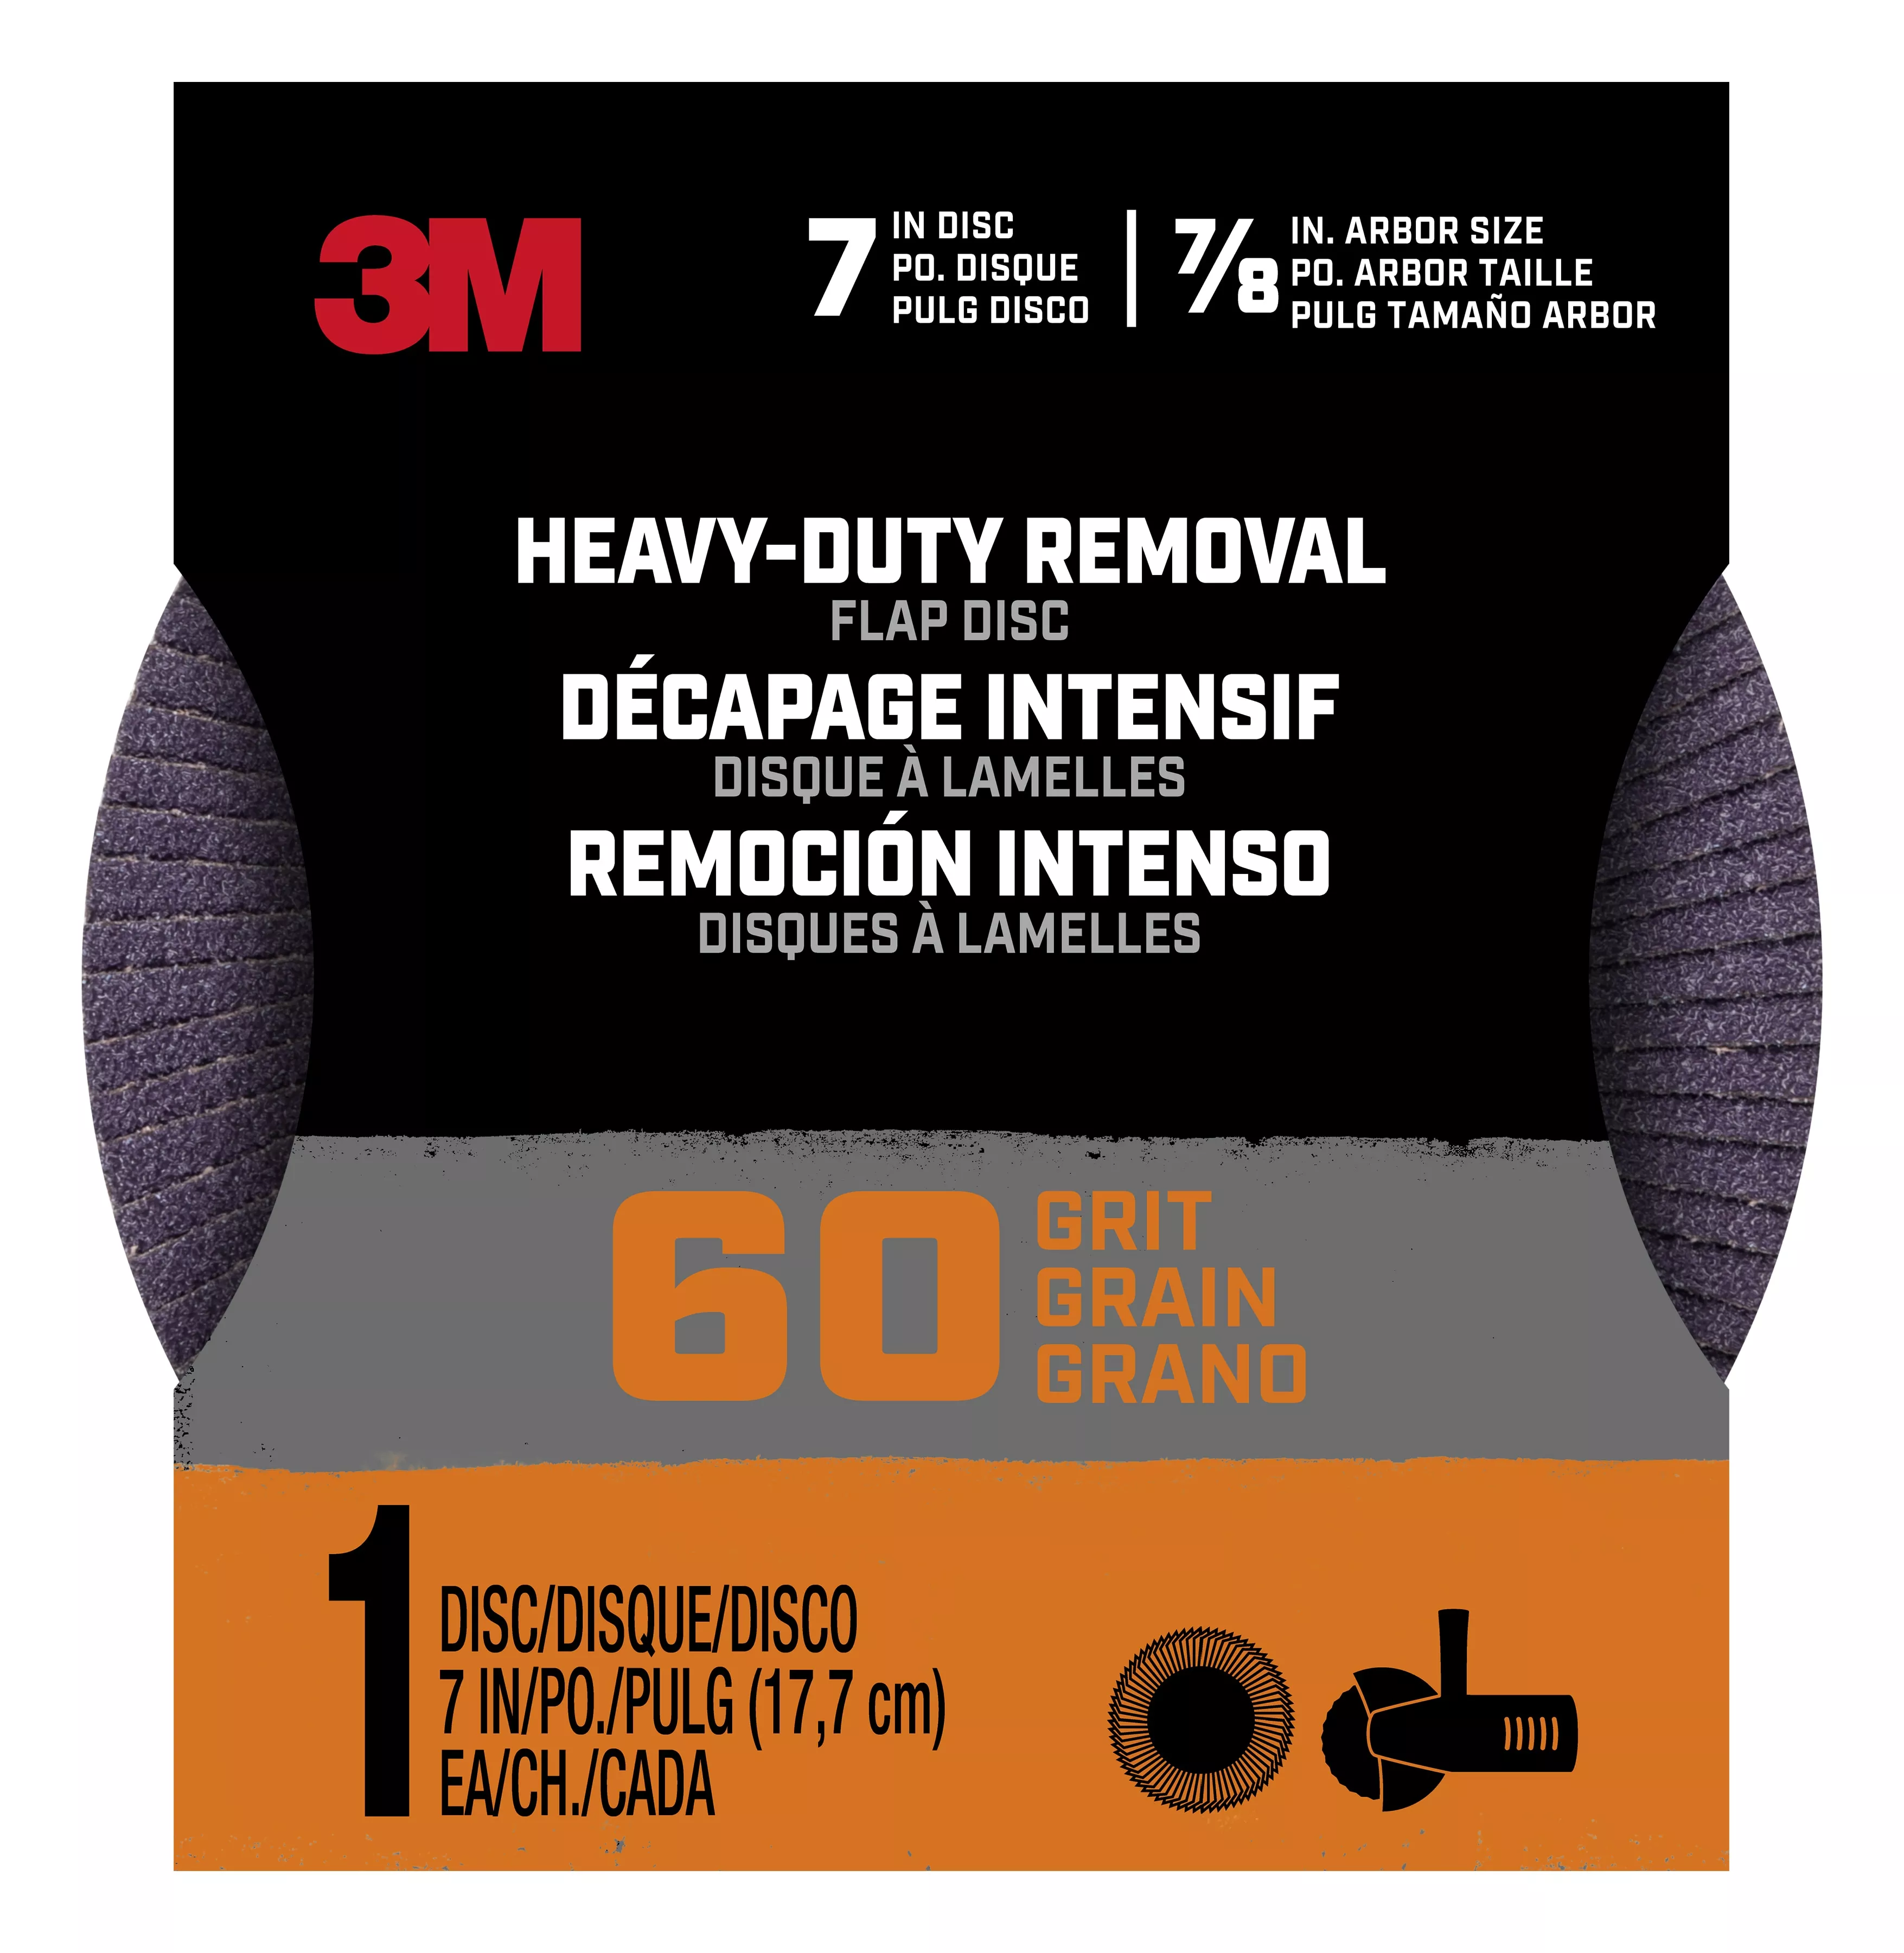 3M™ Heavy Duty Removal 7 inch Flap Disc, 60 grit, FlpDisc7in60, 1/pk,
12/case